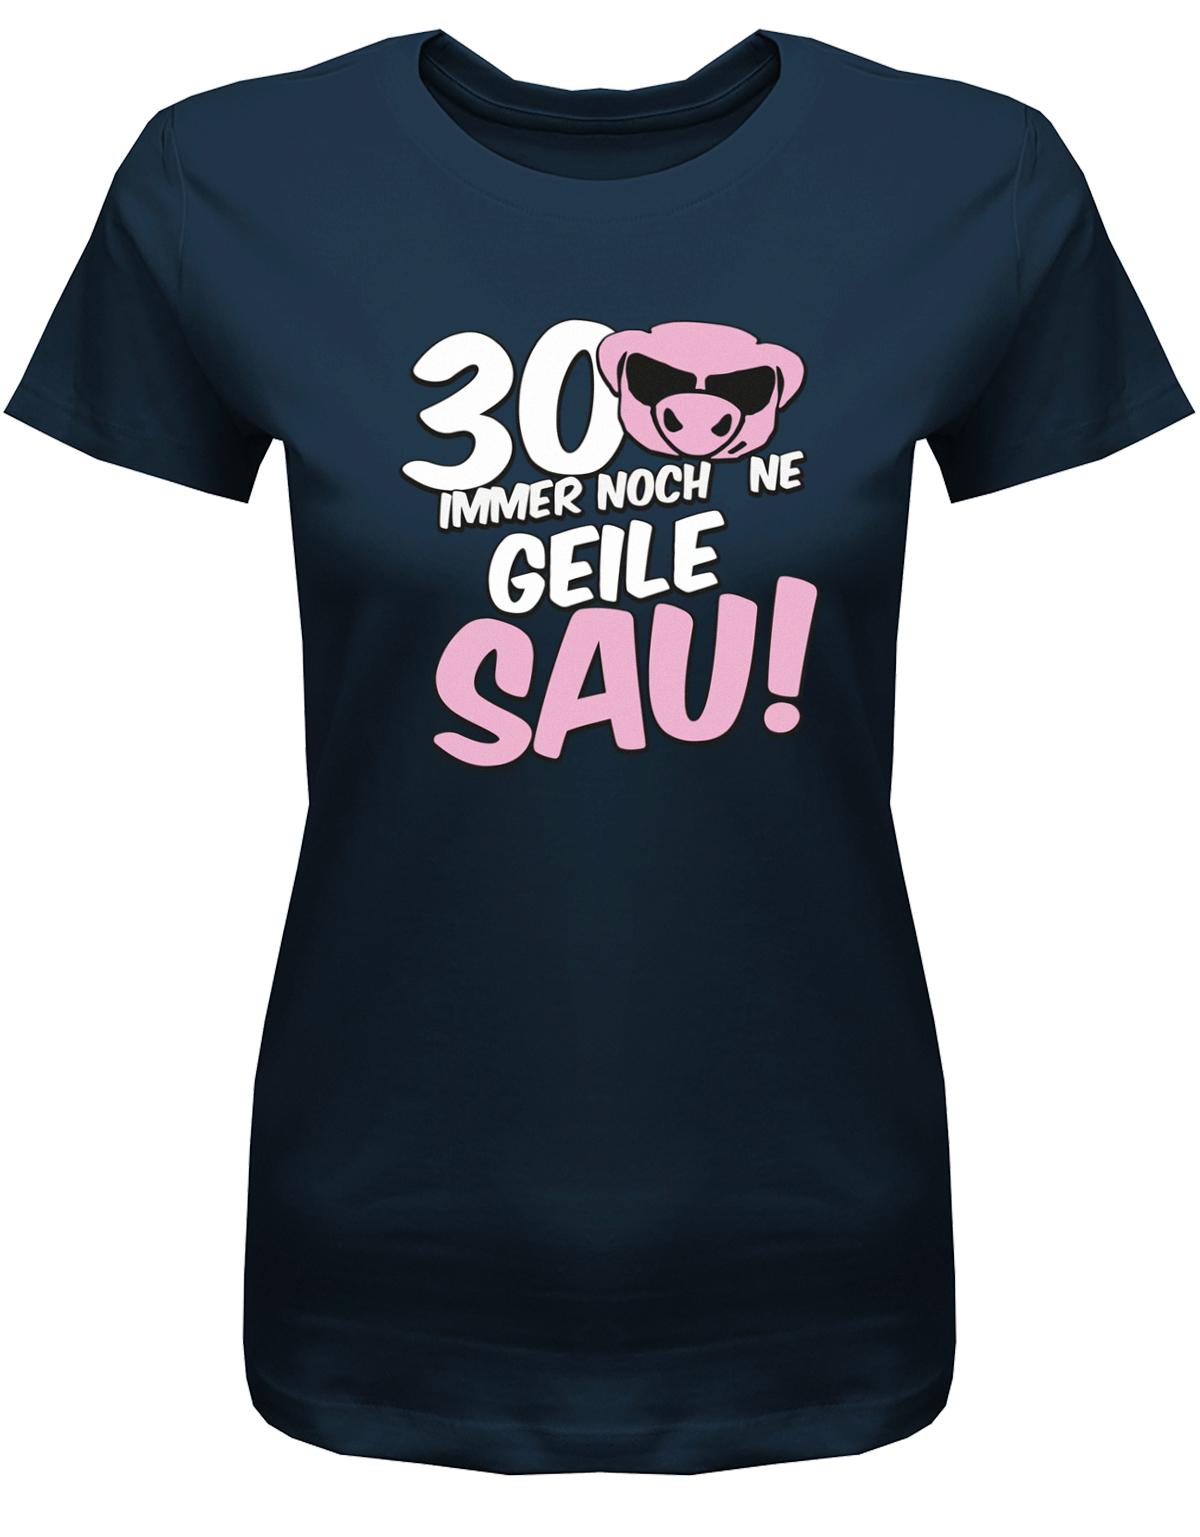 Lustiges T-Shirt zum 30 Geburtstag für die Frau Bedruckt mit 30 Immer noch 'ne geile Sau! Sau mit Sonnenbrille Navy